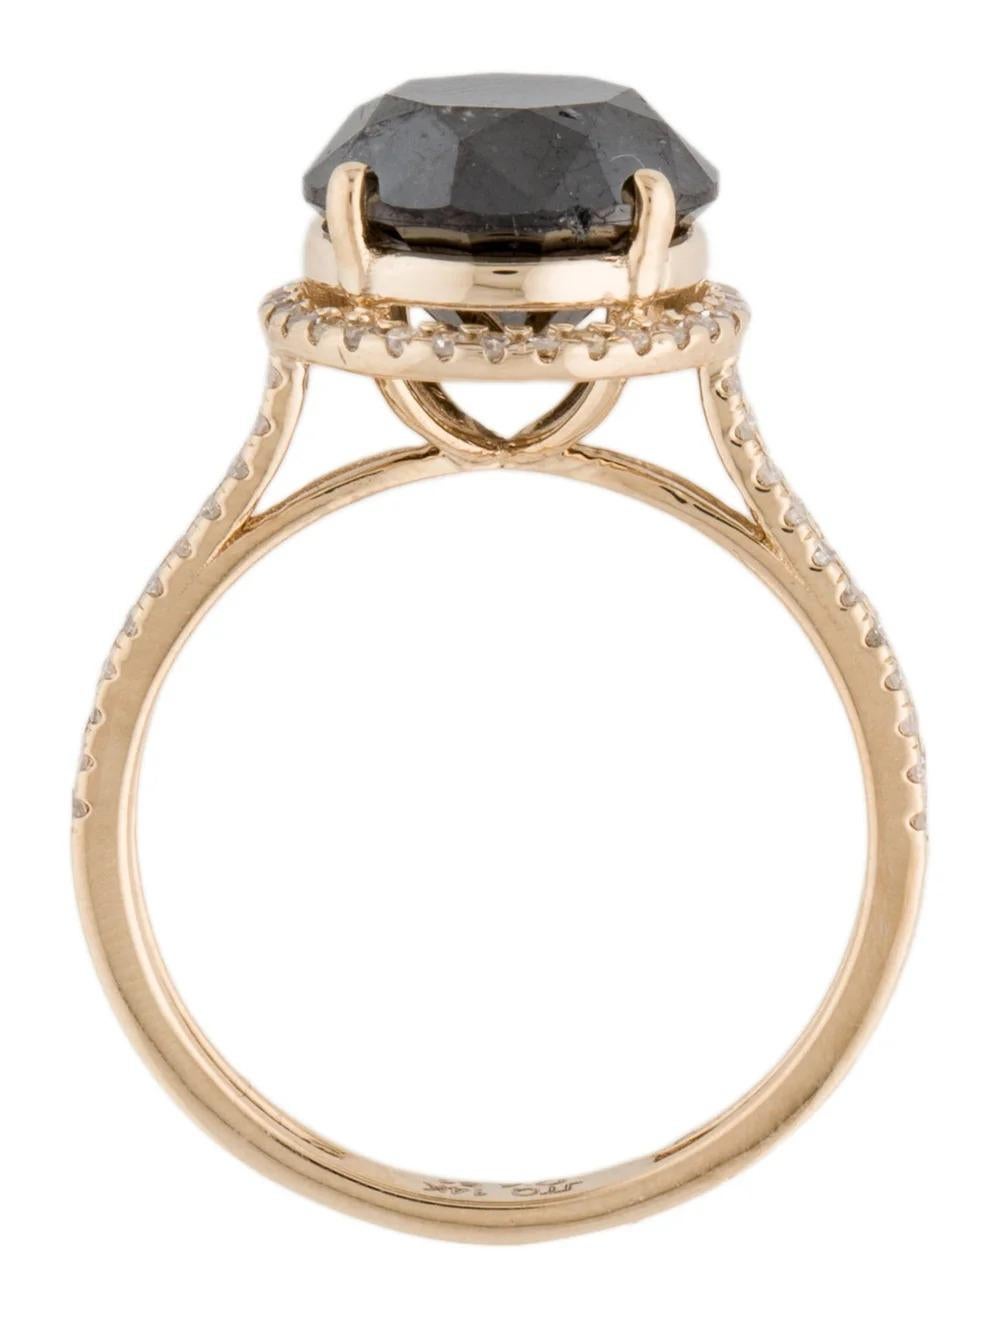 Women's 14K Diamond Halo Ring 4.38ctw - Size 6.75 - Fine Jewelry, Statement Piece